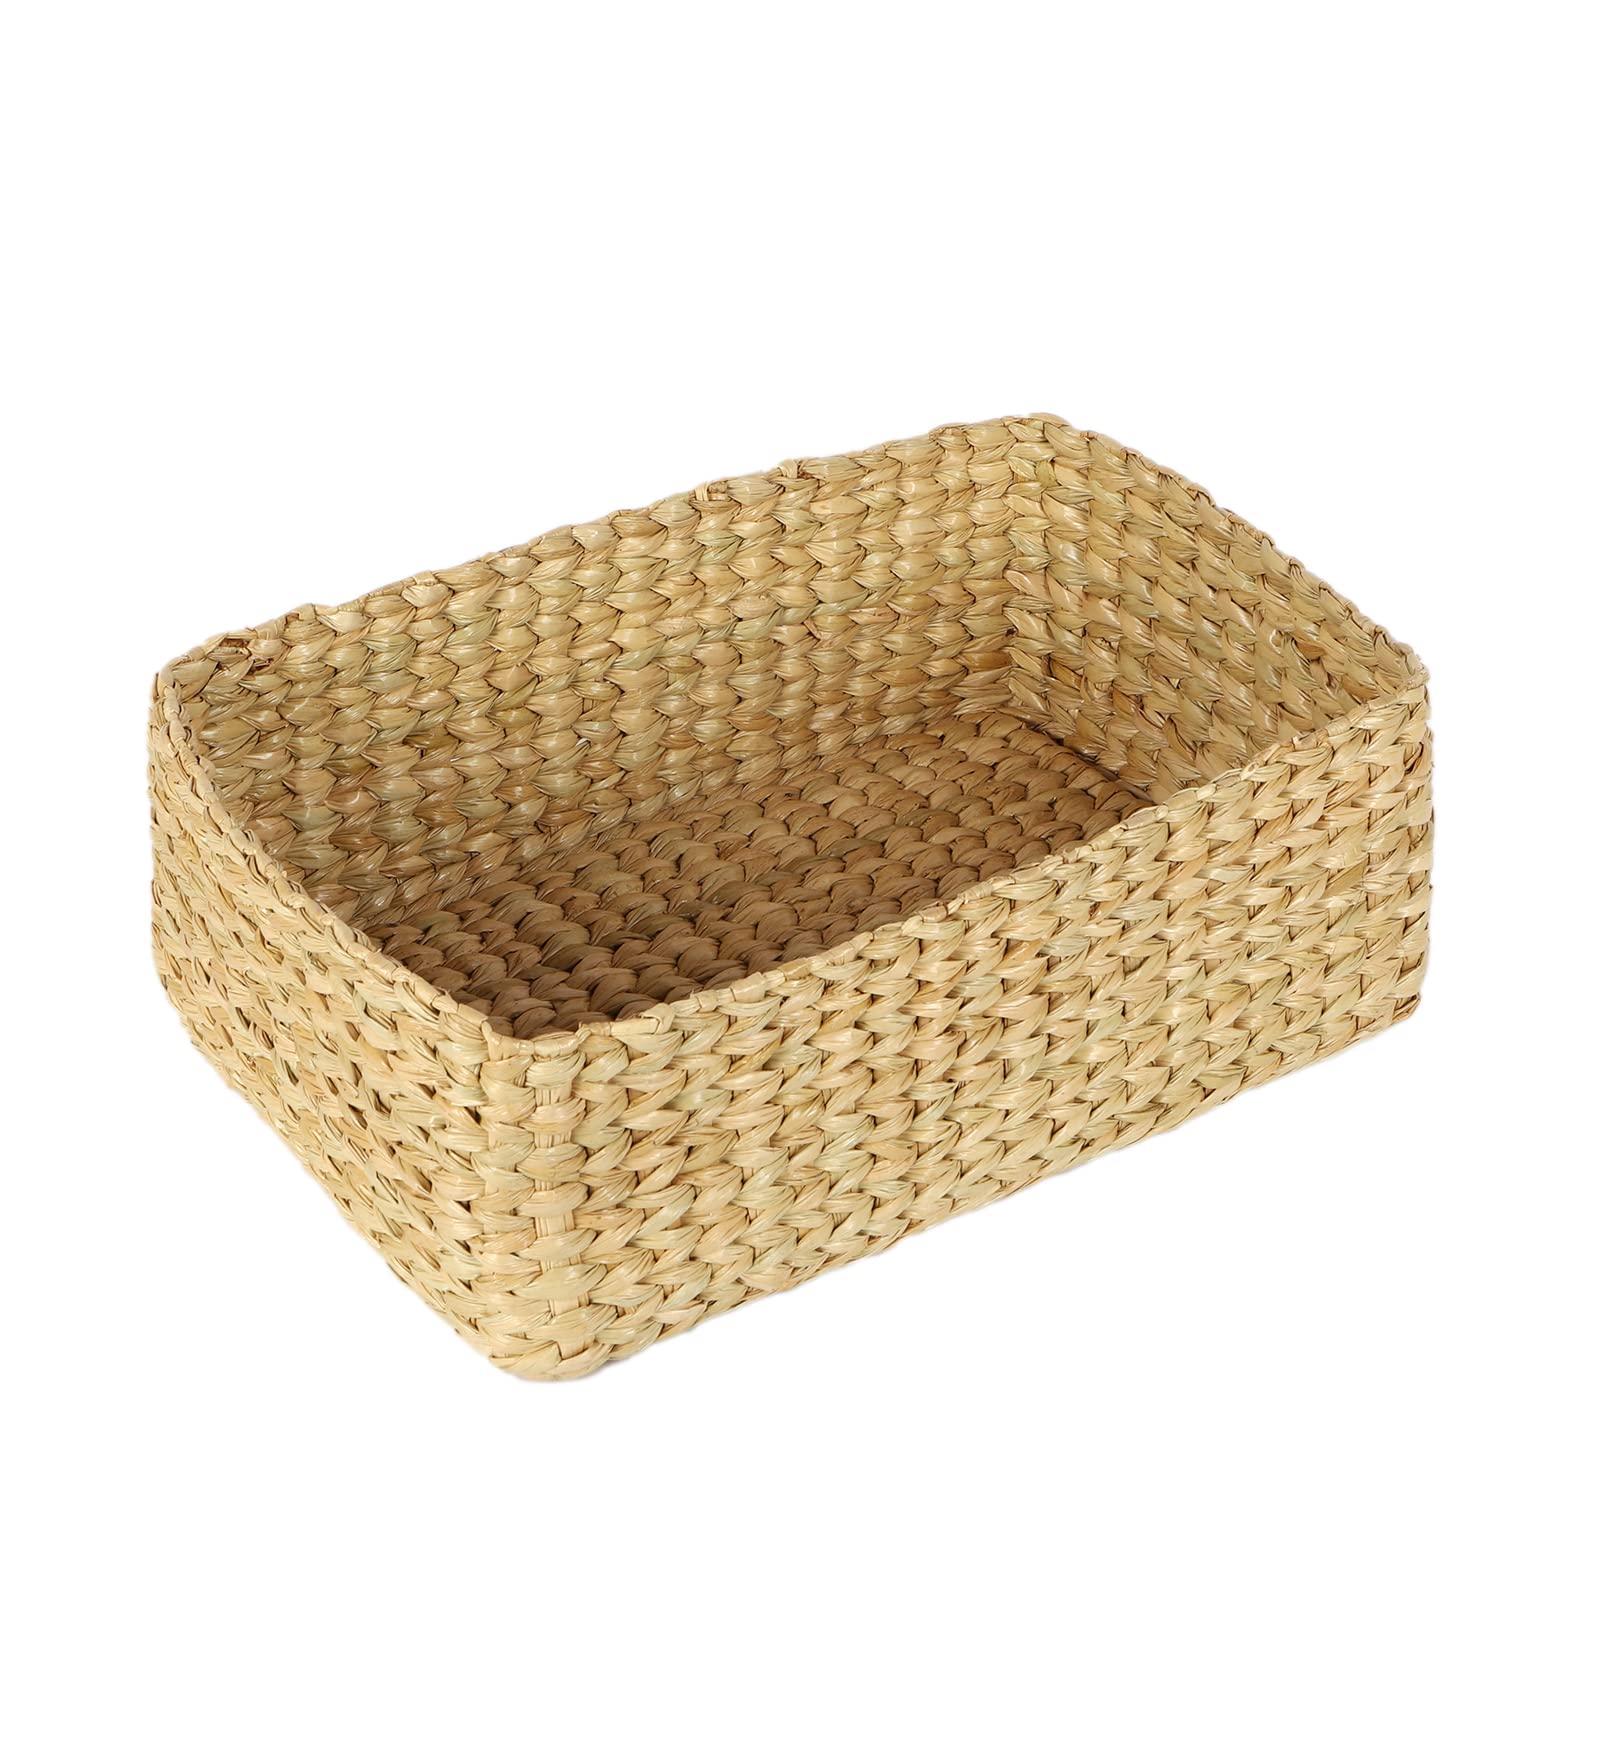 AKWAY Storage Baskets | Cane or Bamboo Basket | Tray Online as Gift Hamper Basket/Wardrobe Basket (Medium) (MEDIUM) - Akway